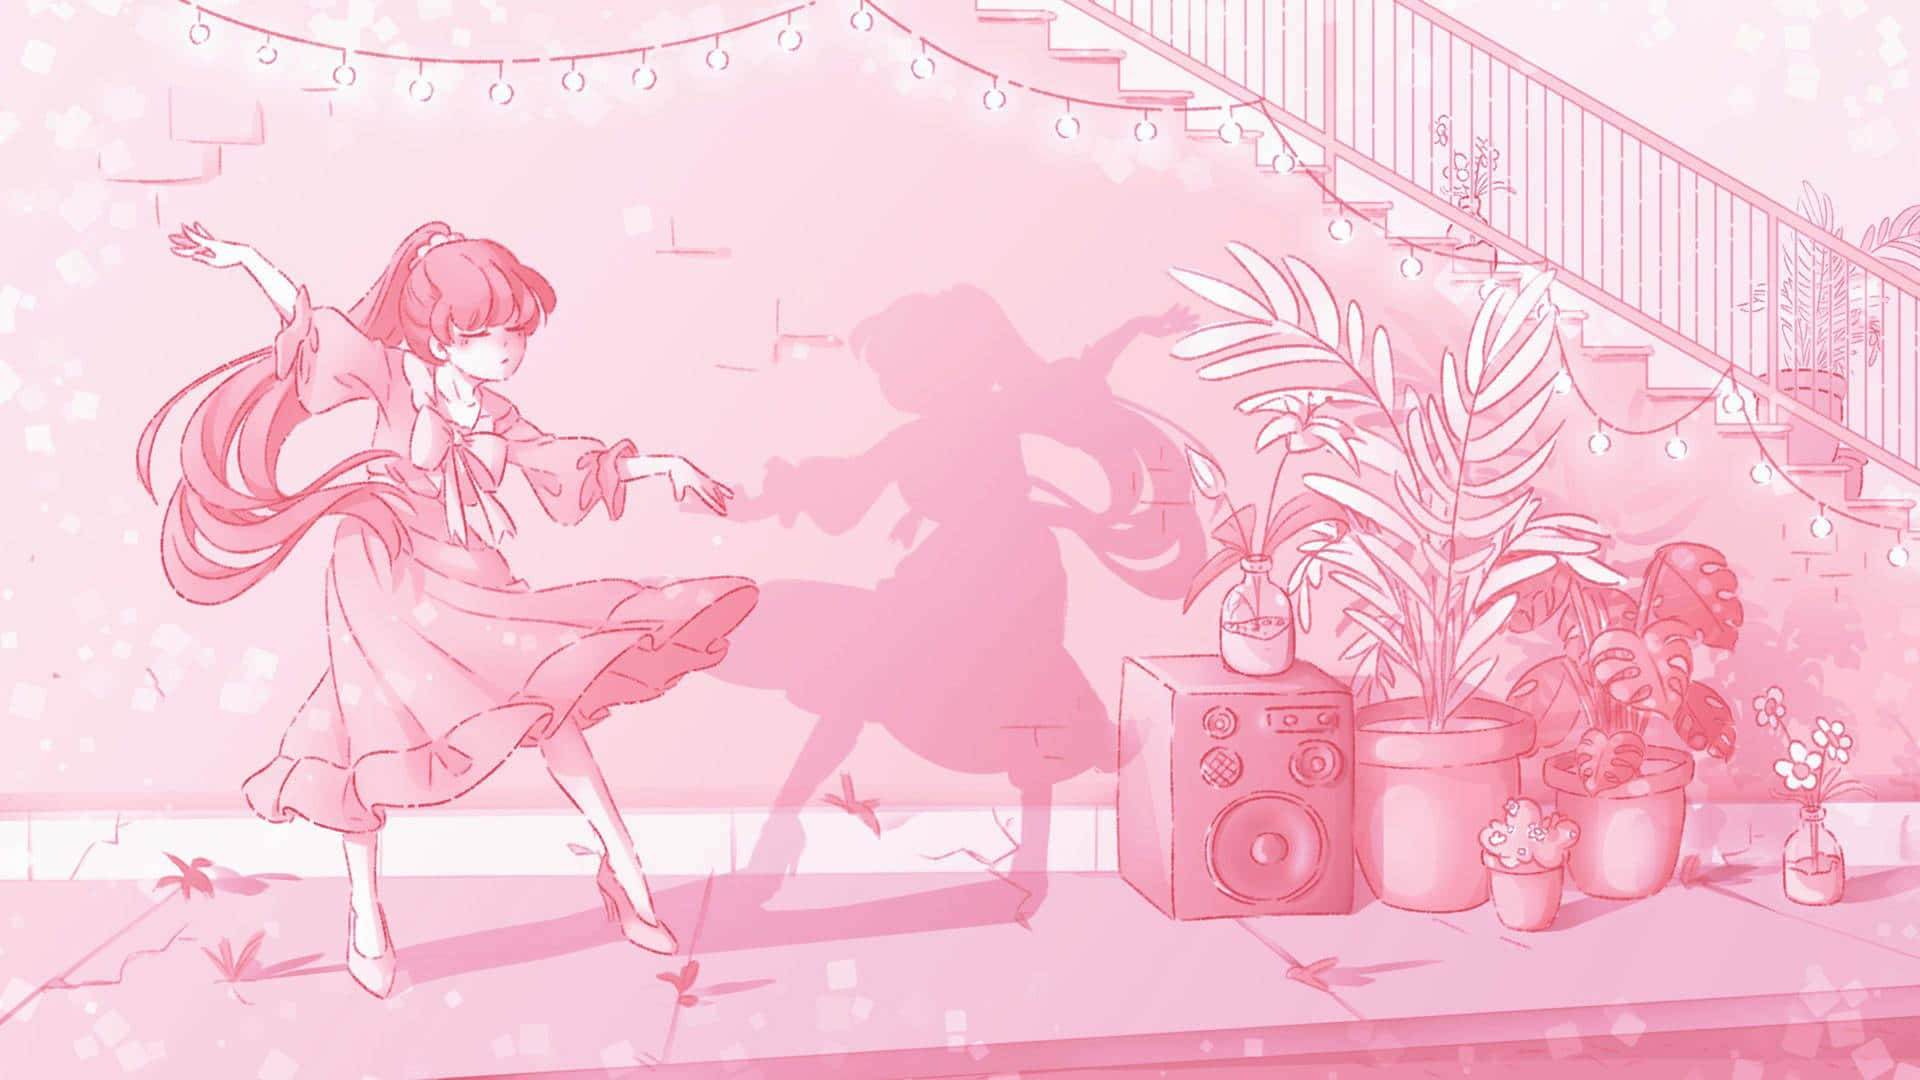 Unavibrante Vista Scenica Di Un Estetico Anime Rosa.